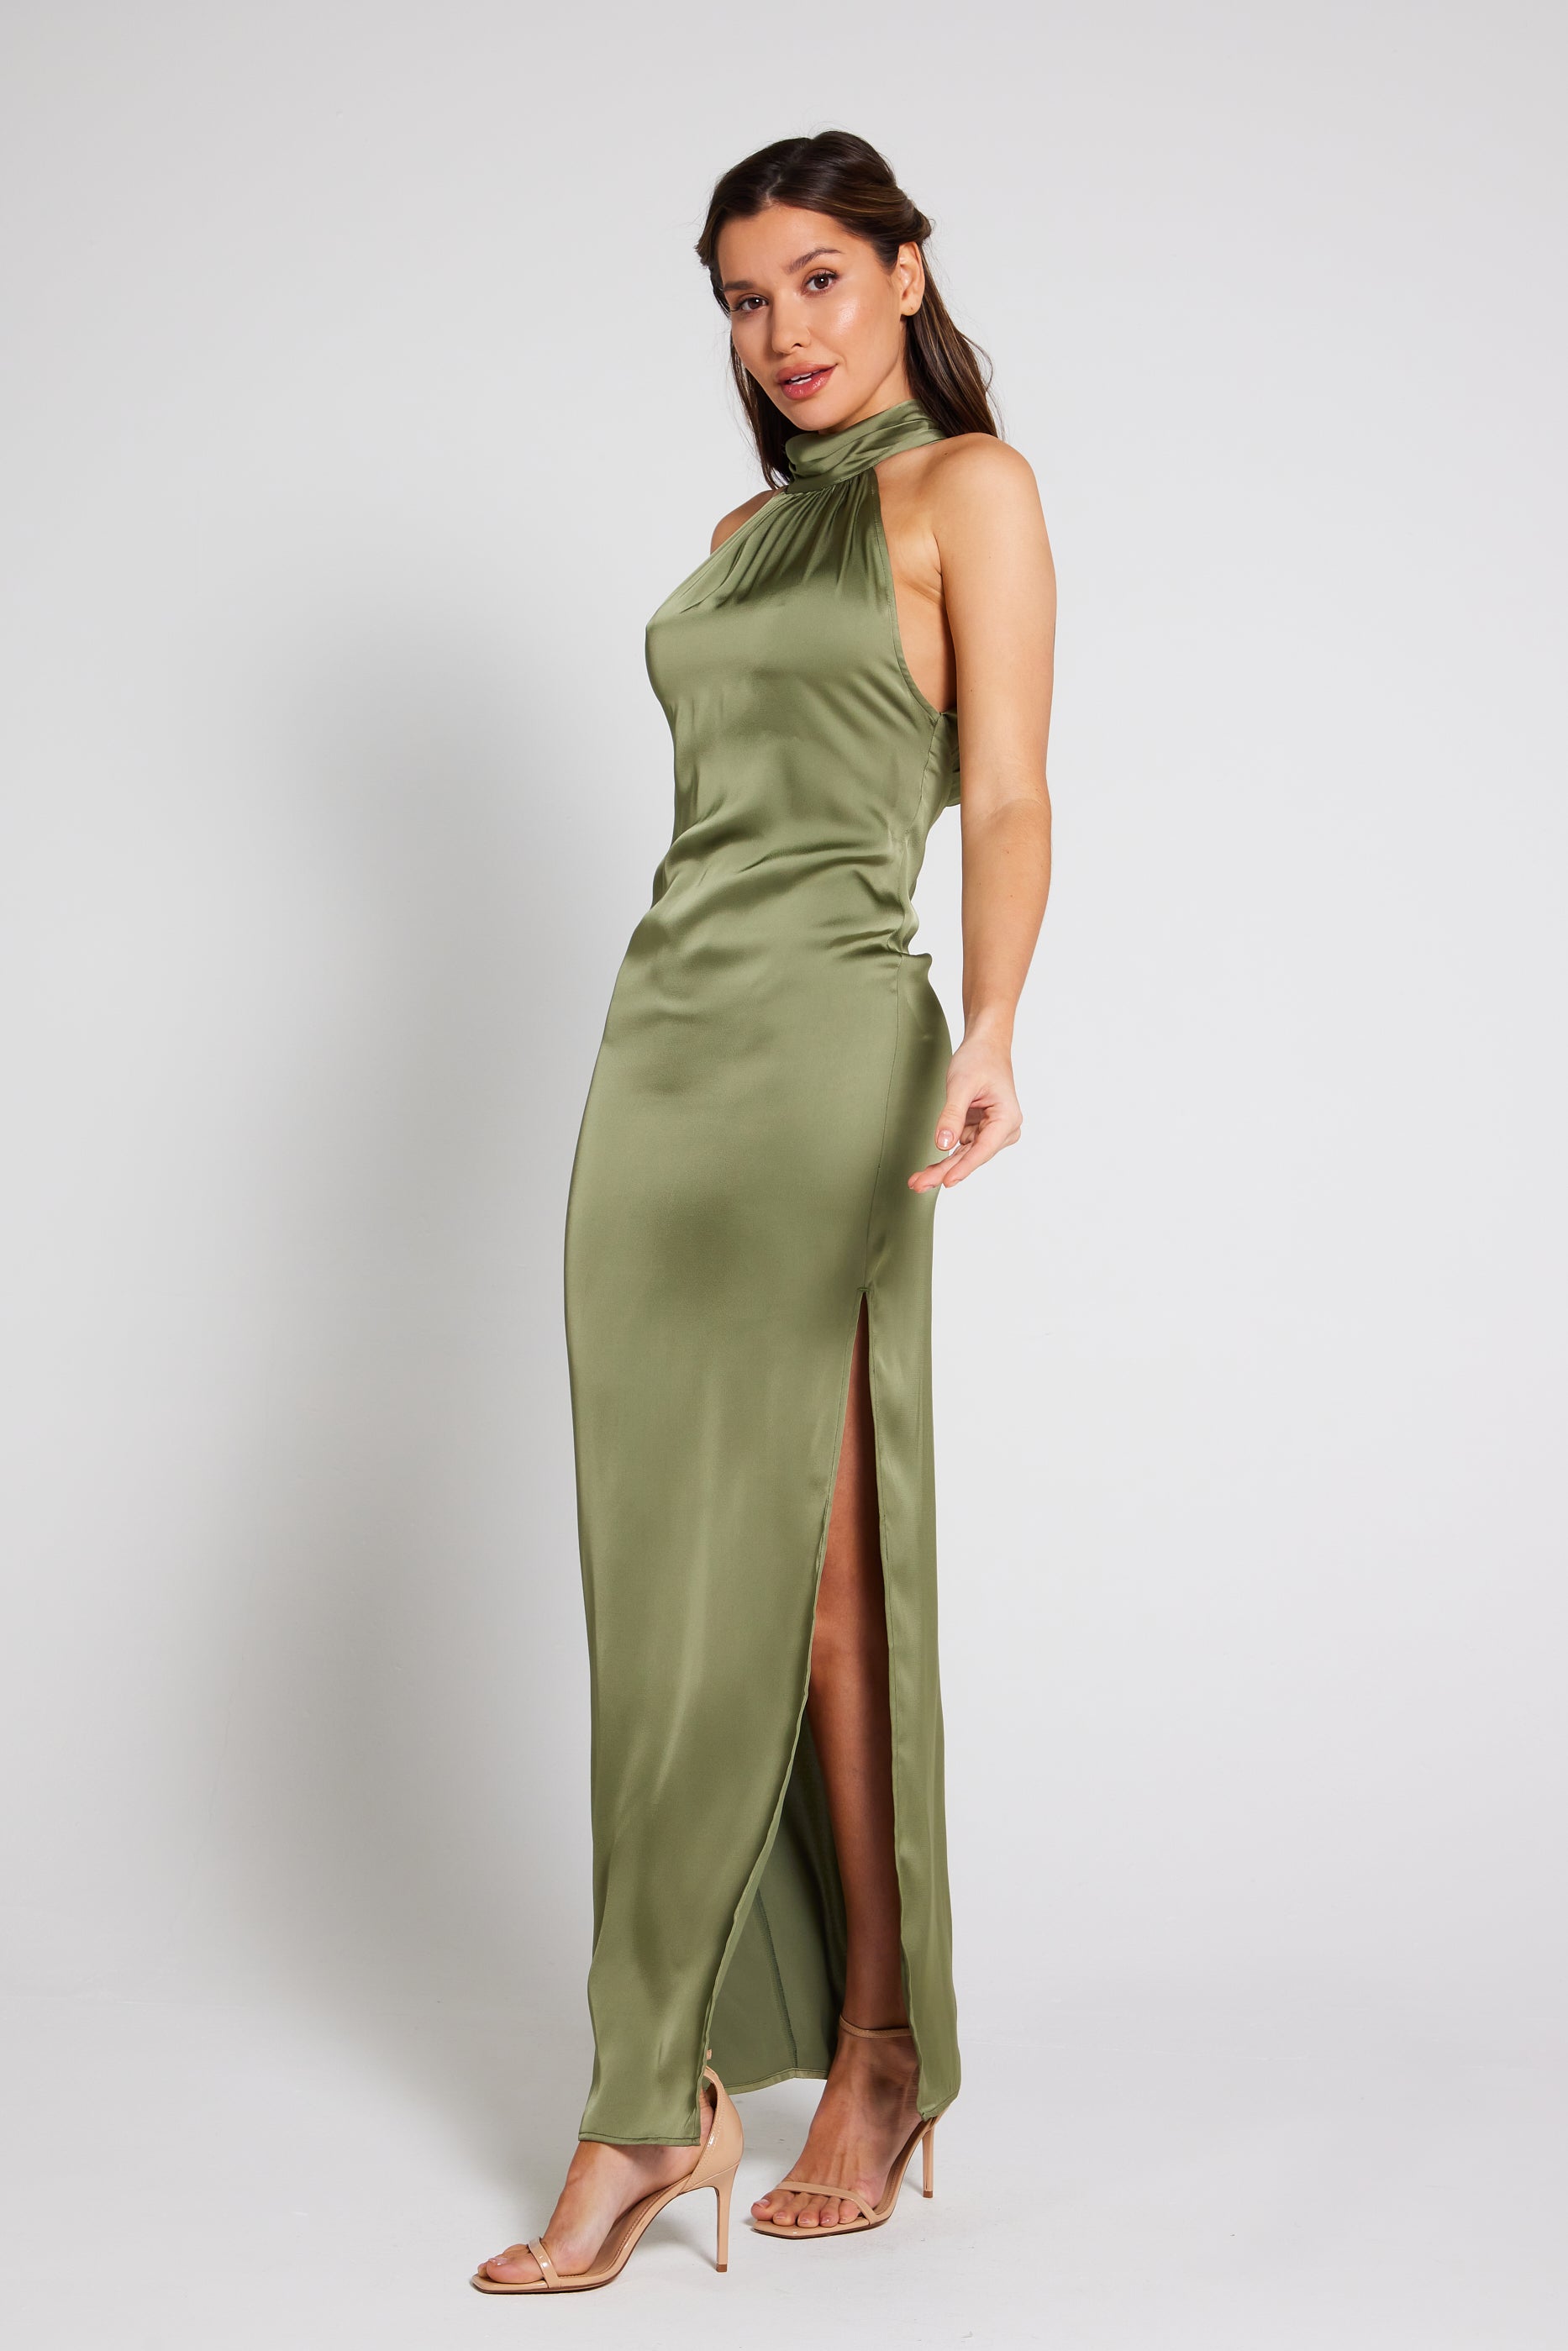 Emerald Green Mini Dress - Satin Mini Dress - Tulip Mini Dress - Lulus